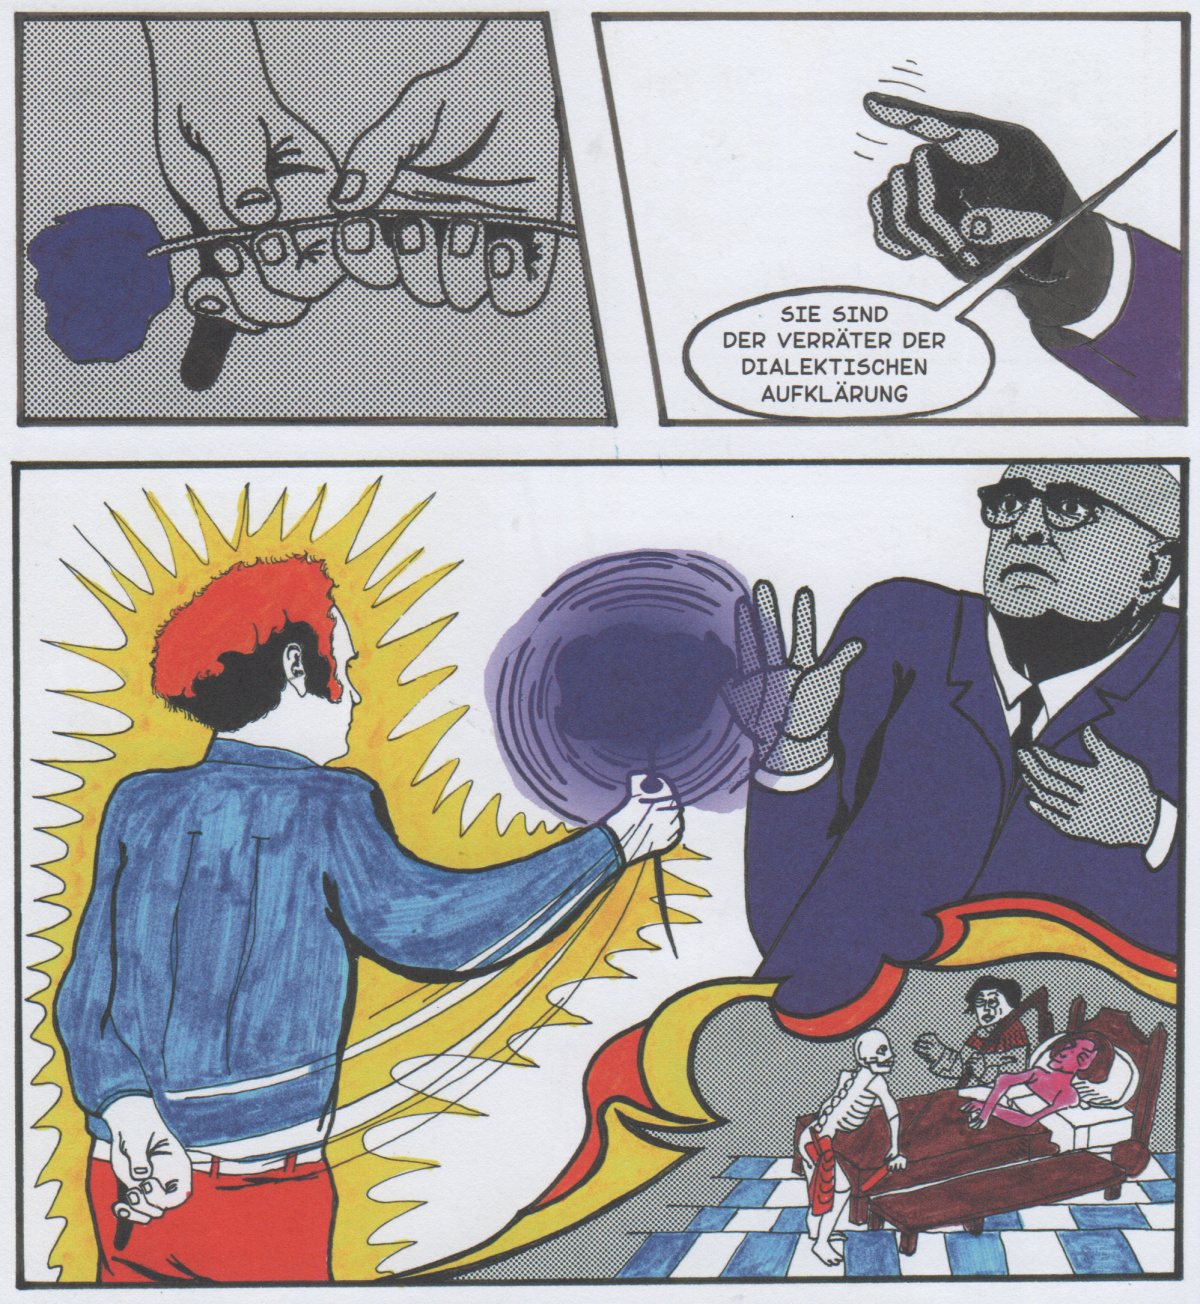 Die blaue Blume tödlich, Bild: Aus: Tod des Adorno. Comic von Helmut Wietz. Metrolit-Verlag.